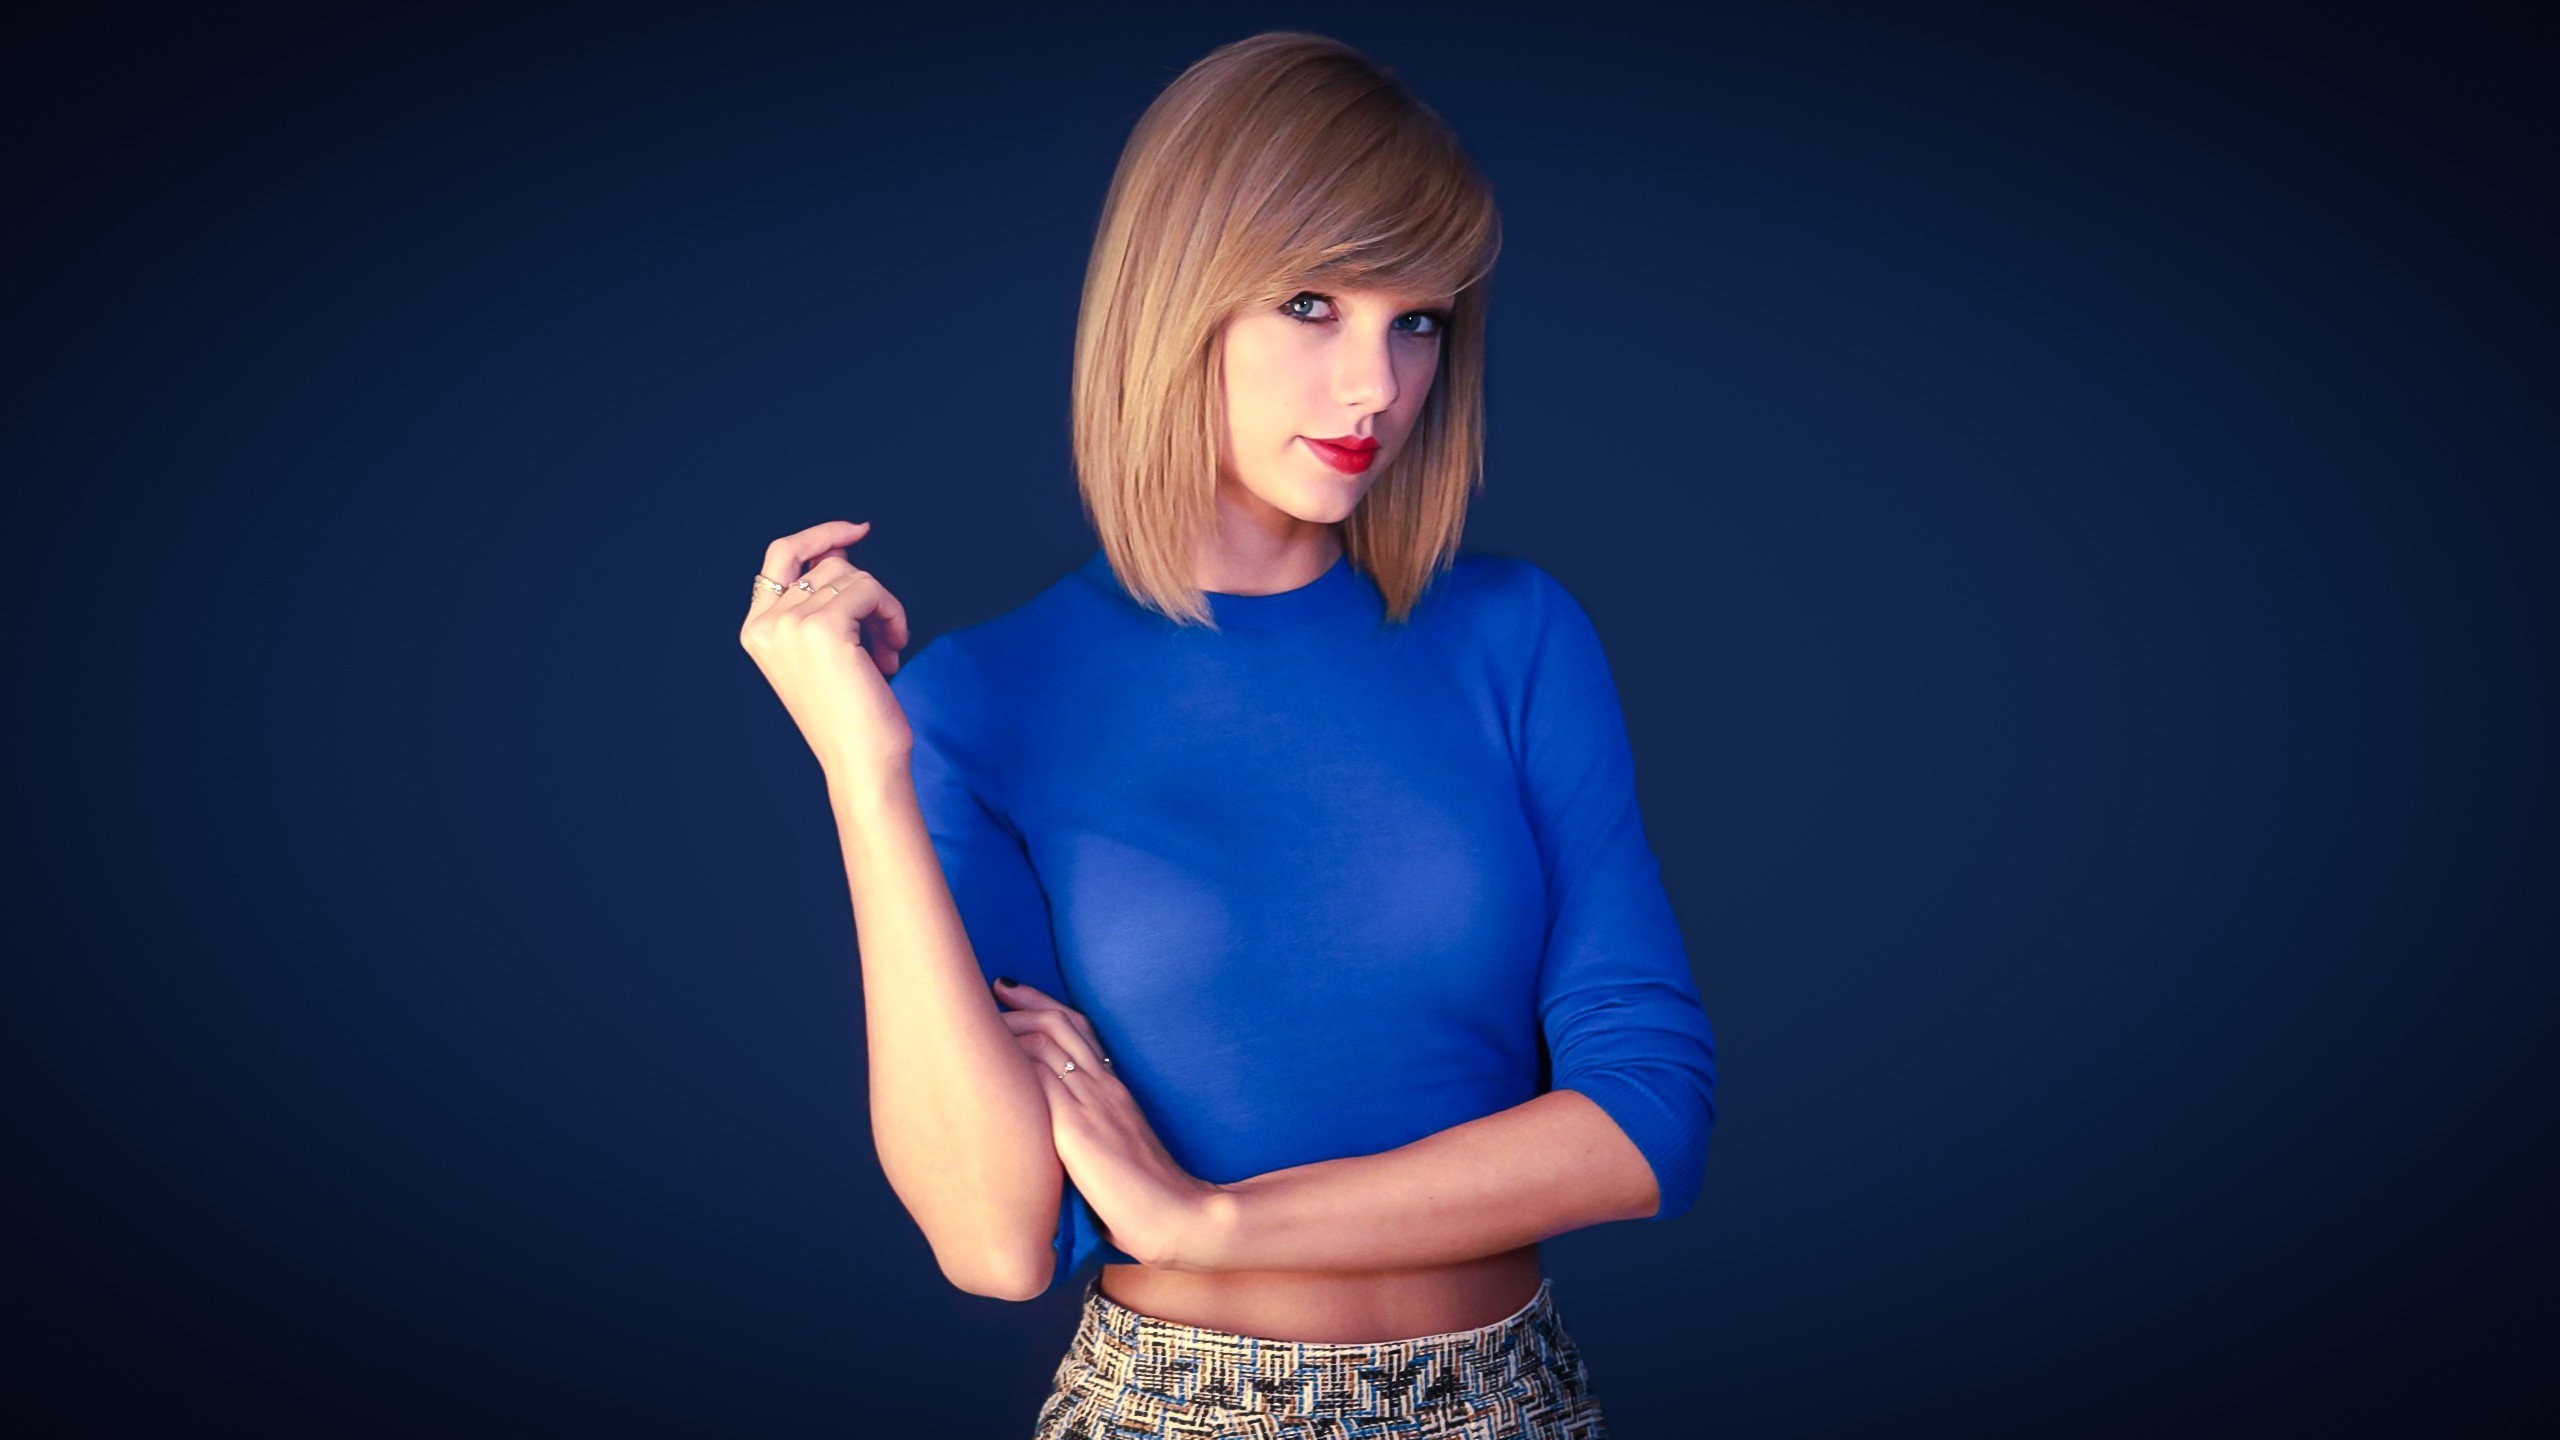 2560x1440 Taylor Swift New (1366x768 Resolution)